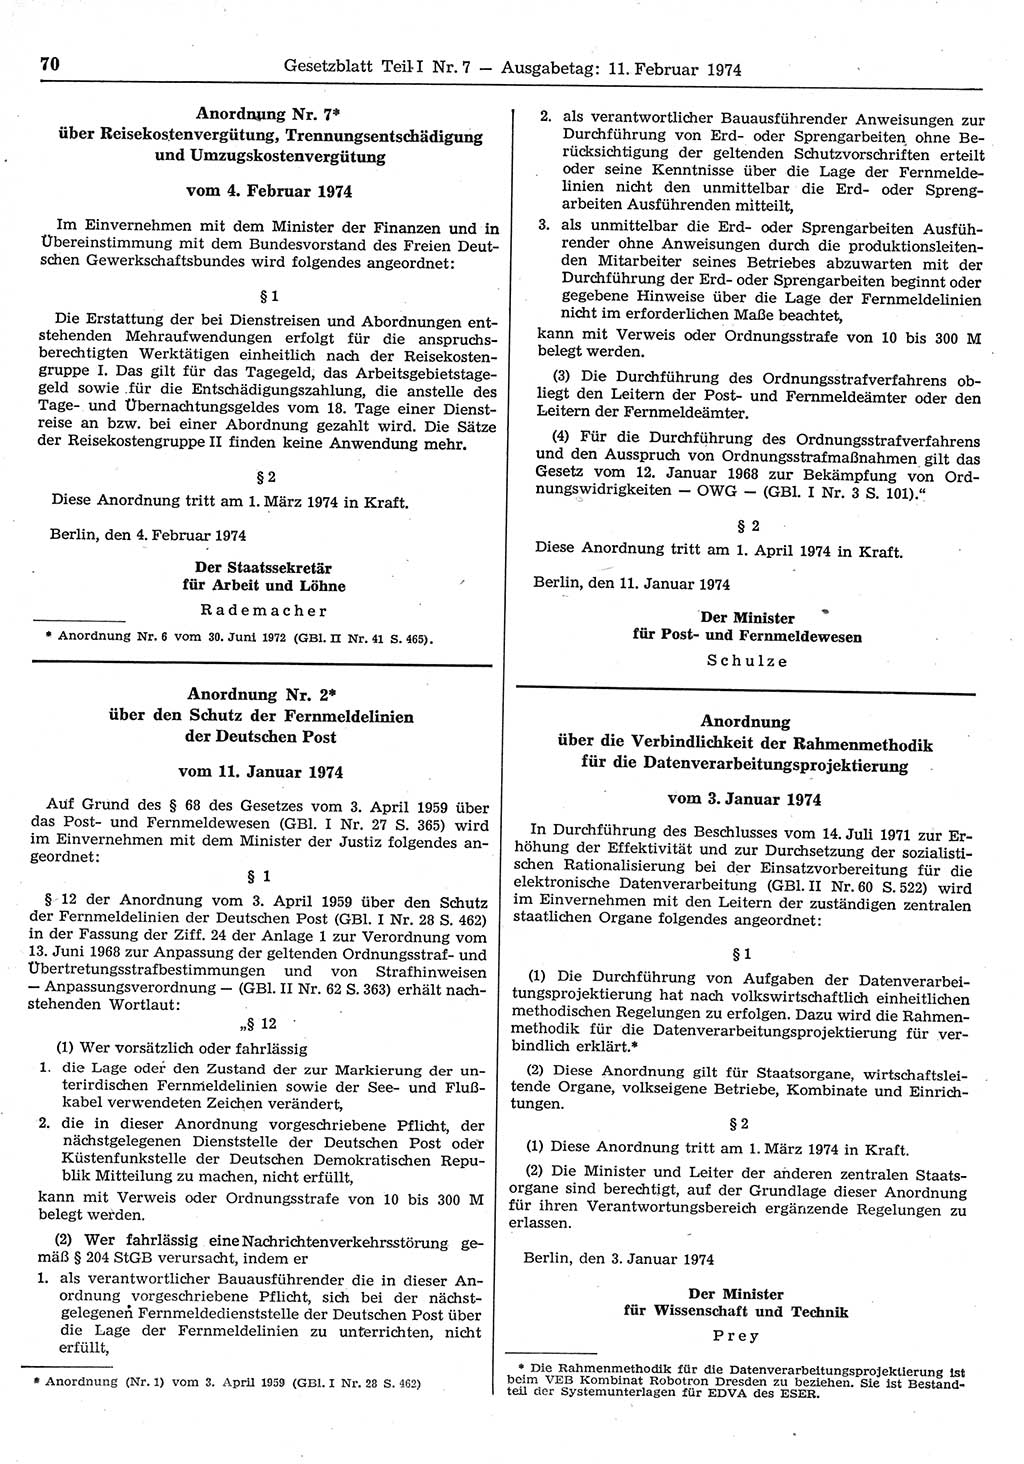 Gesetzblatt (GBl.) der Deutschen Demokratischen Republik (DDR) Teil Ⅰ 1974, Seite 70 (GBl. DDR Ⅰ 1974, S. 70)